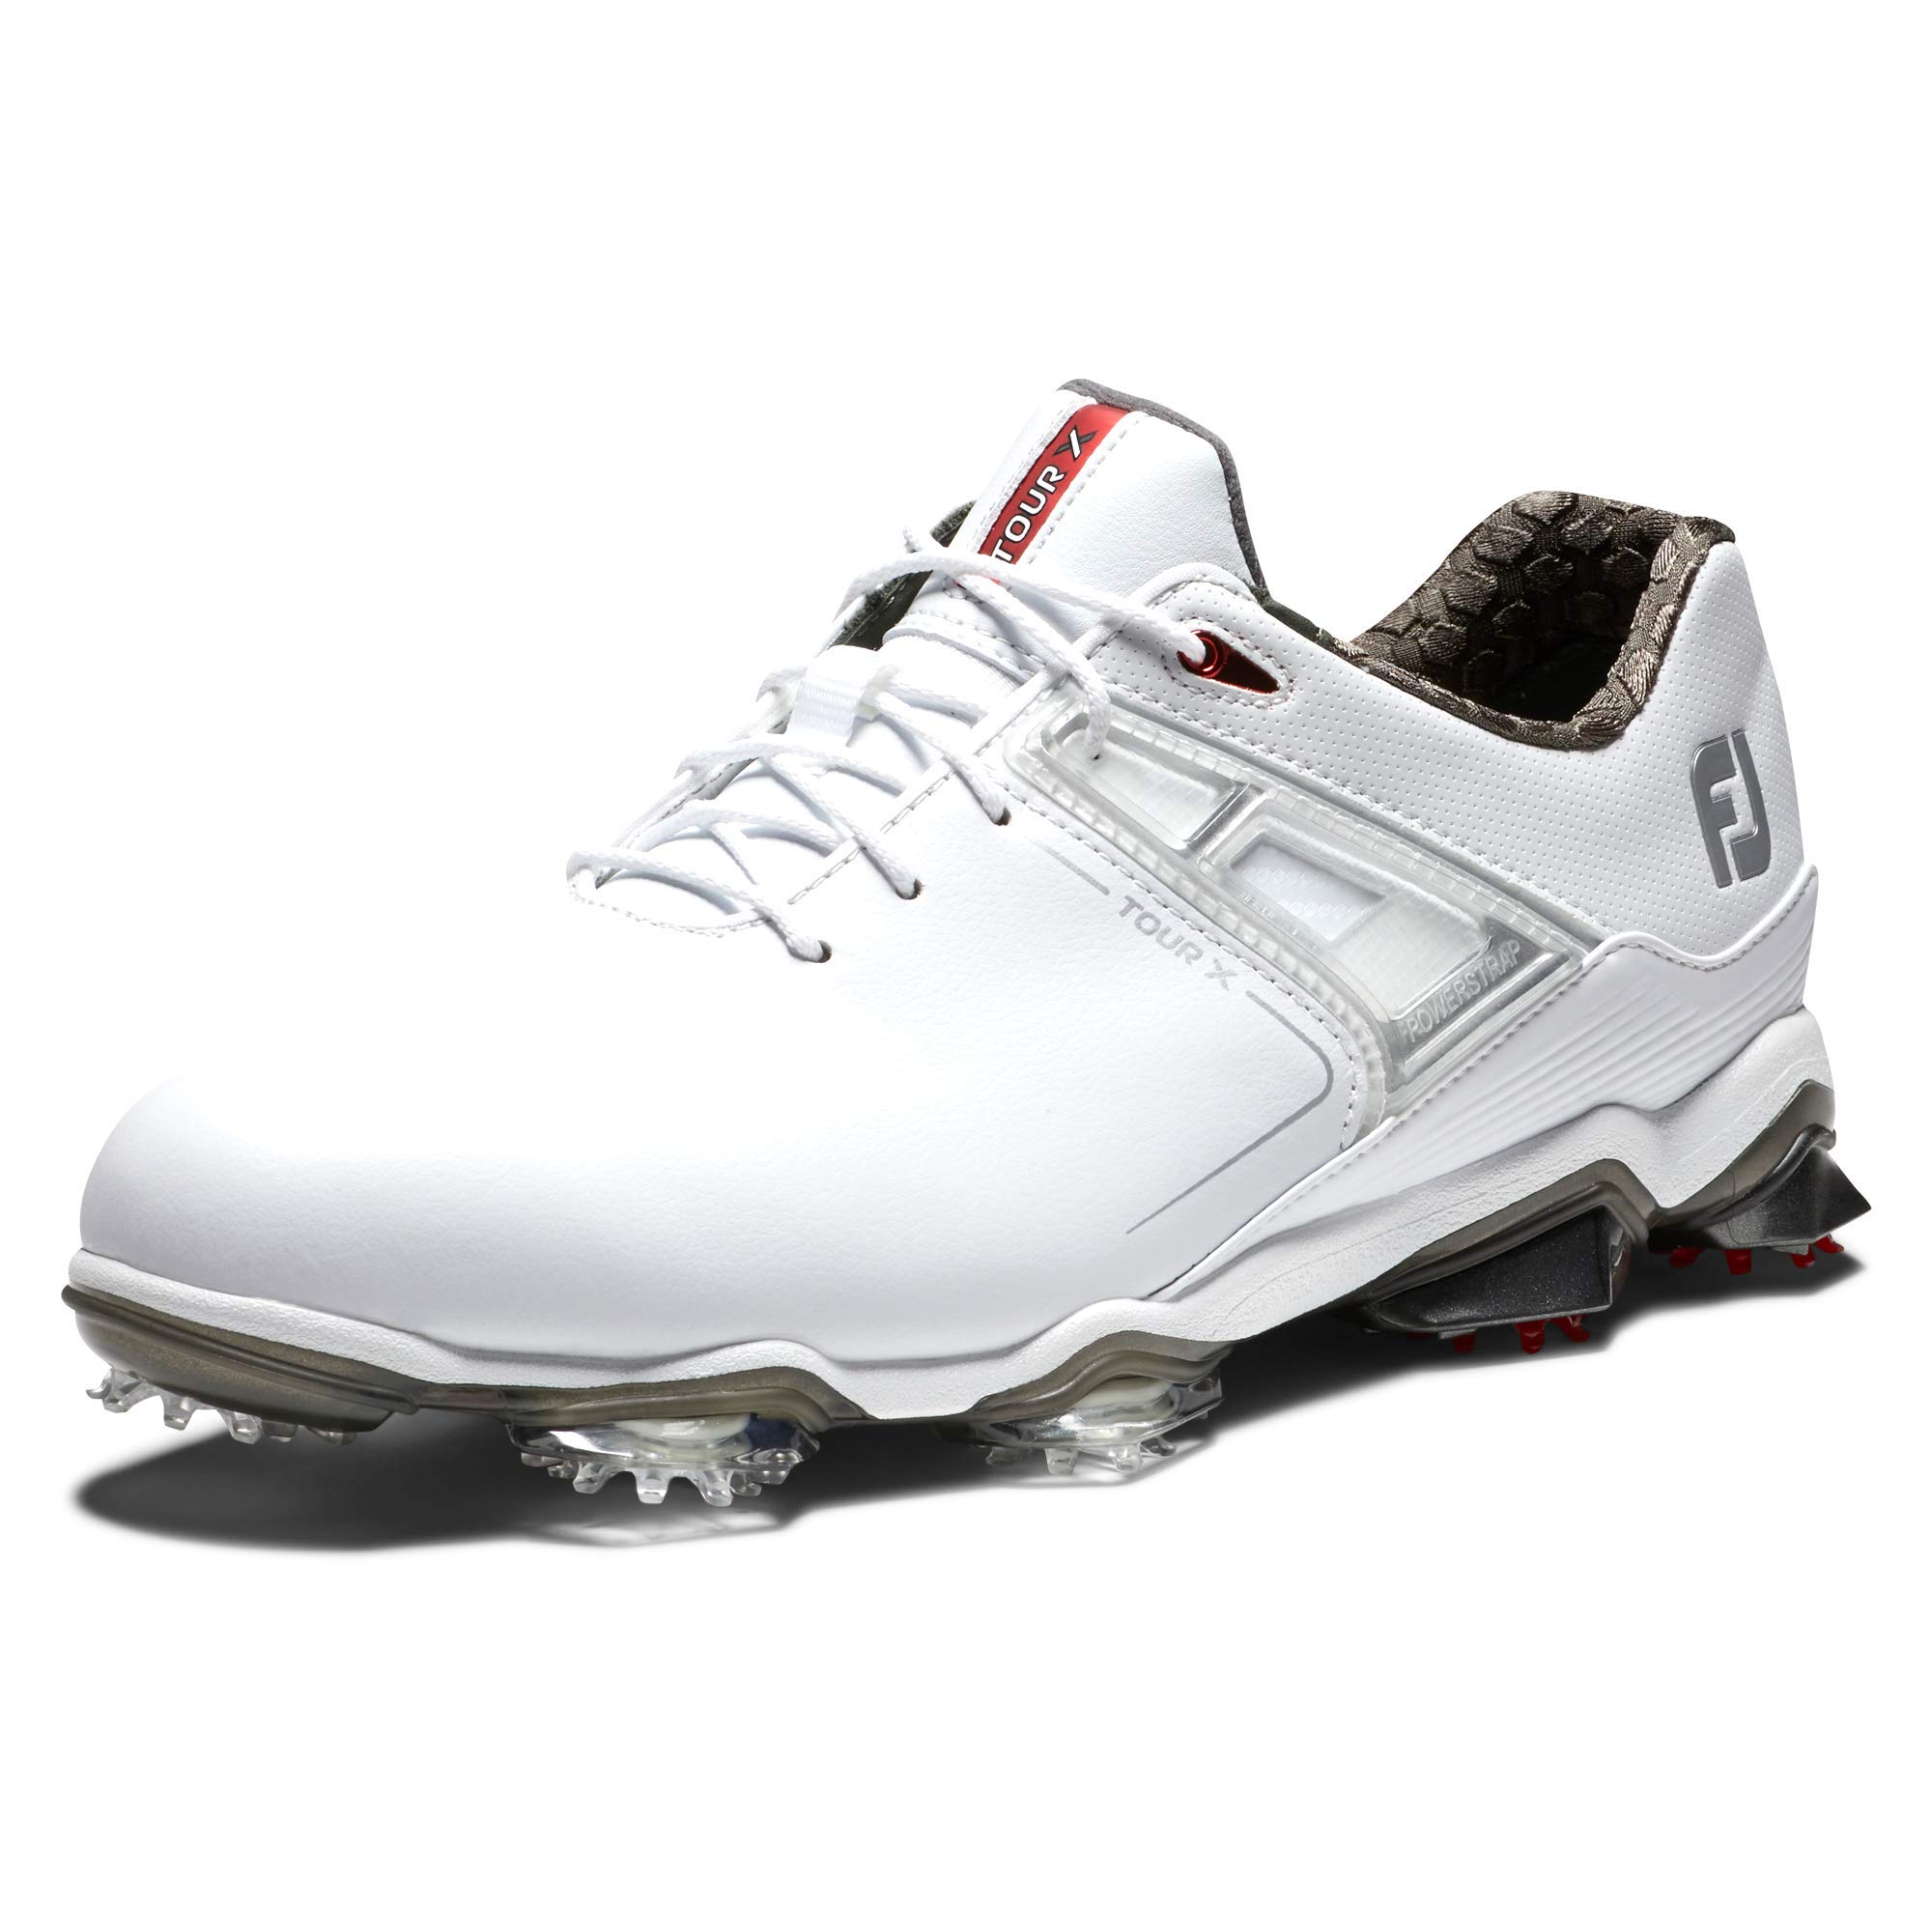 Men's Tour X Golf Shoes Clout Offer CloutShoes.com